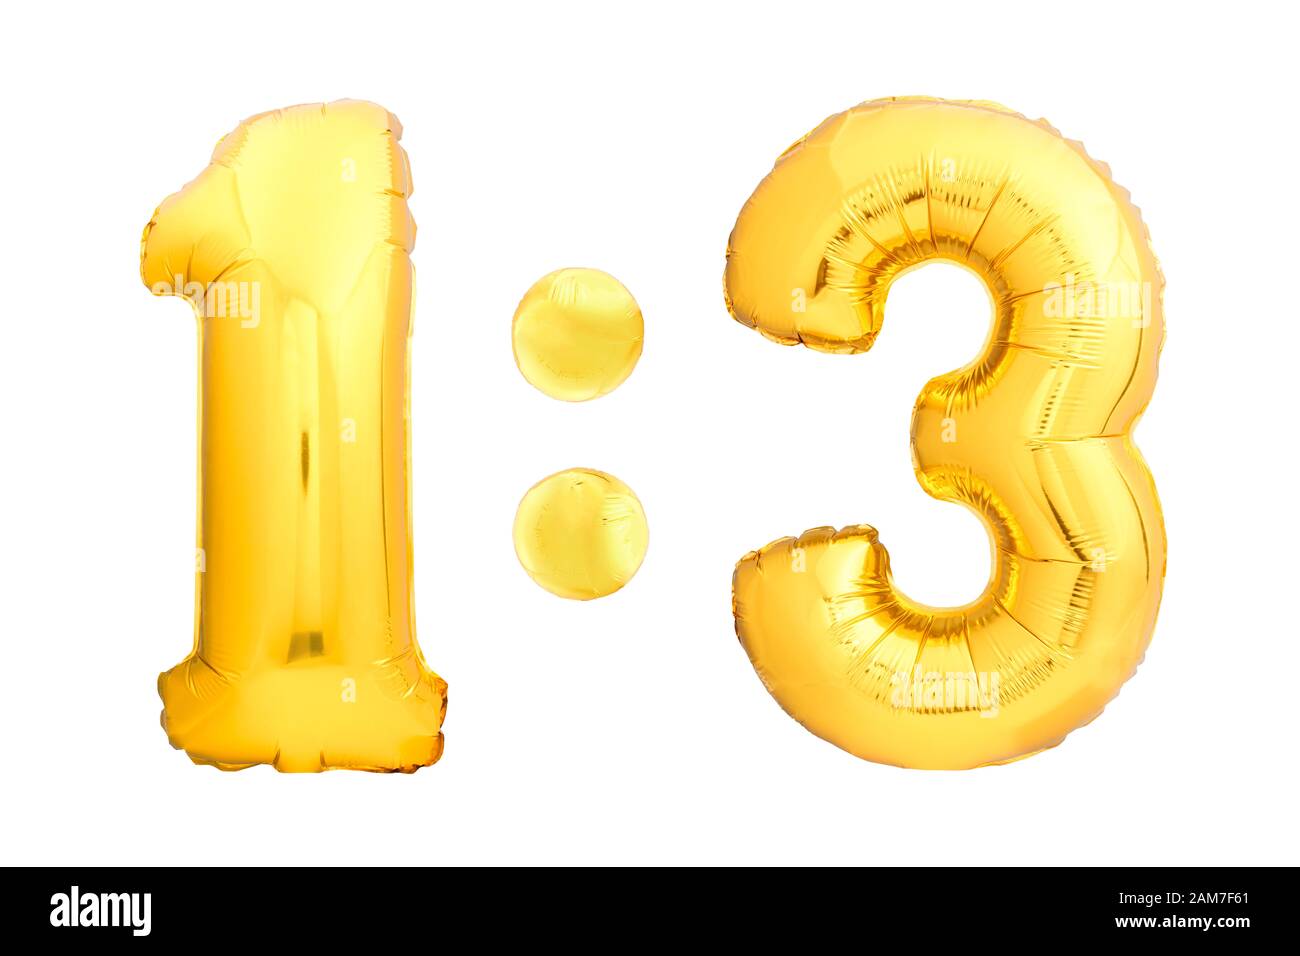 Score de football 1:3 numéros un et trois faits de ballons gonflables dorés isolés sur fond blanc. Сhildren tableau de bord de la compétition Banque D'Images